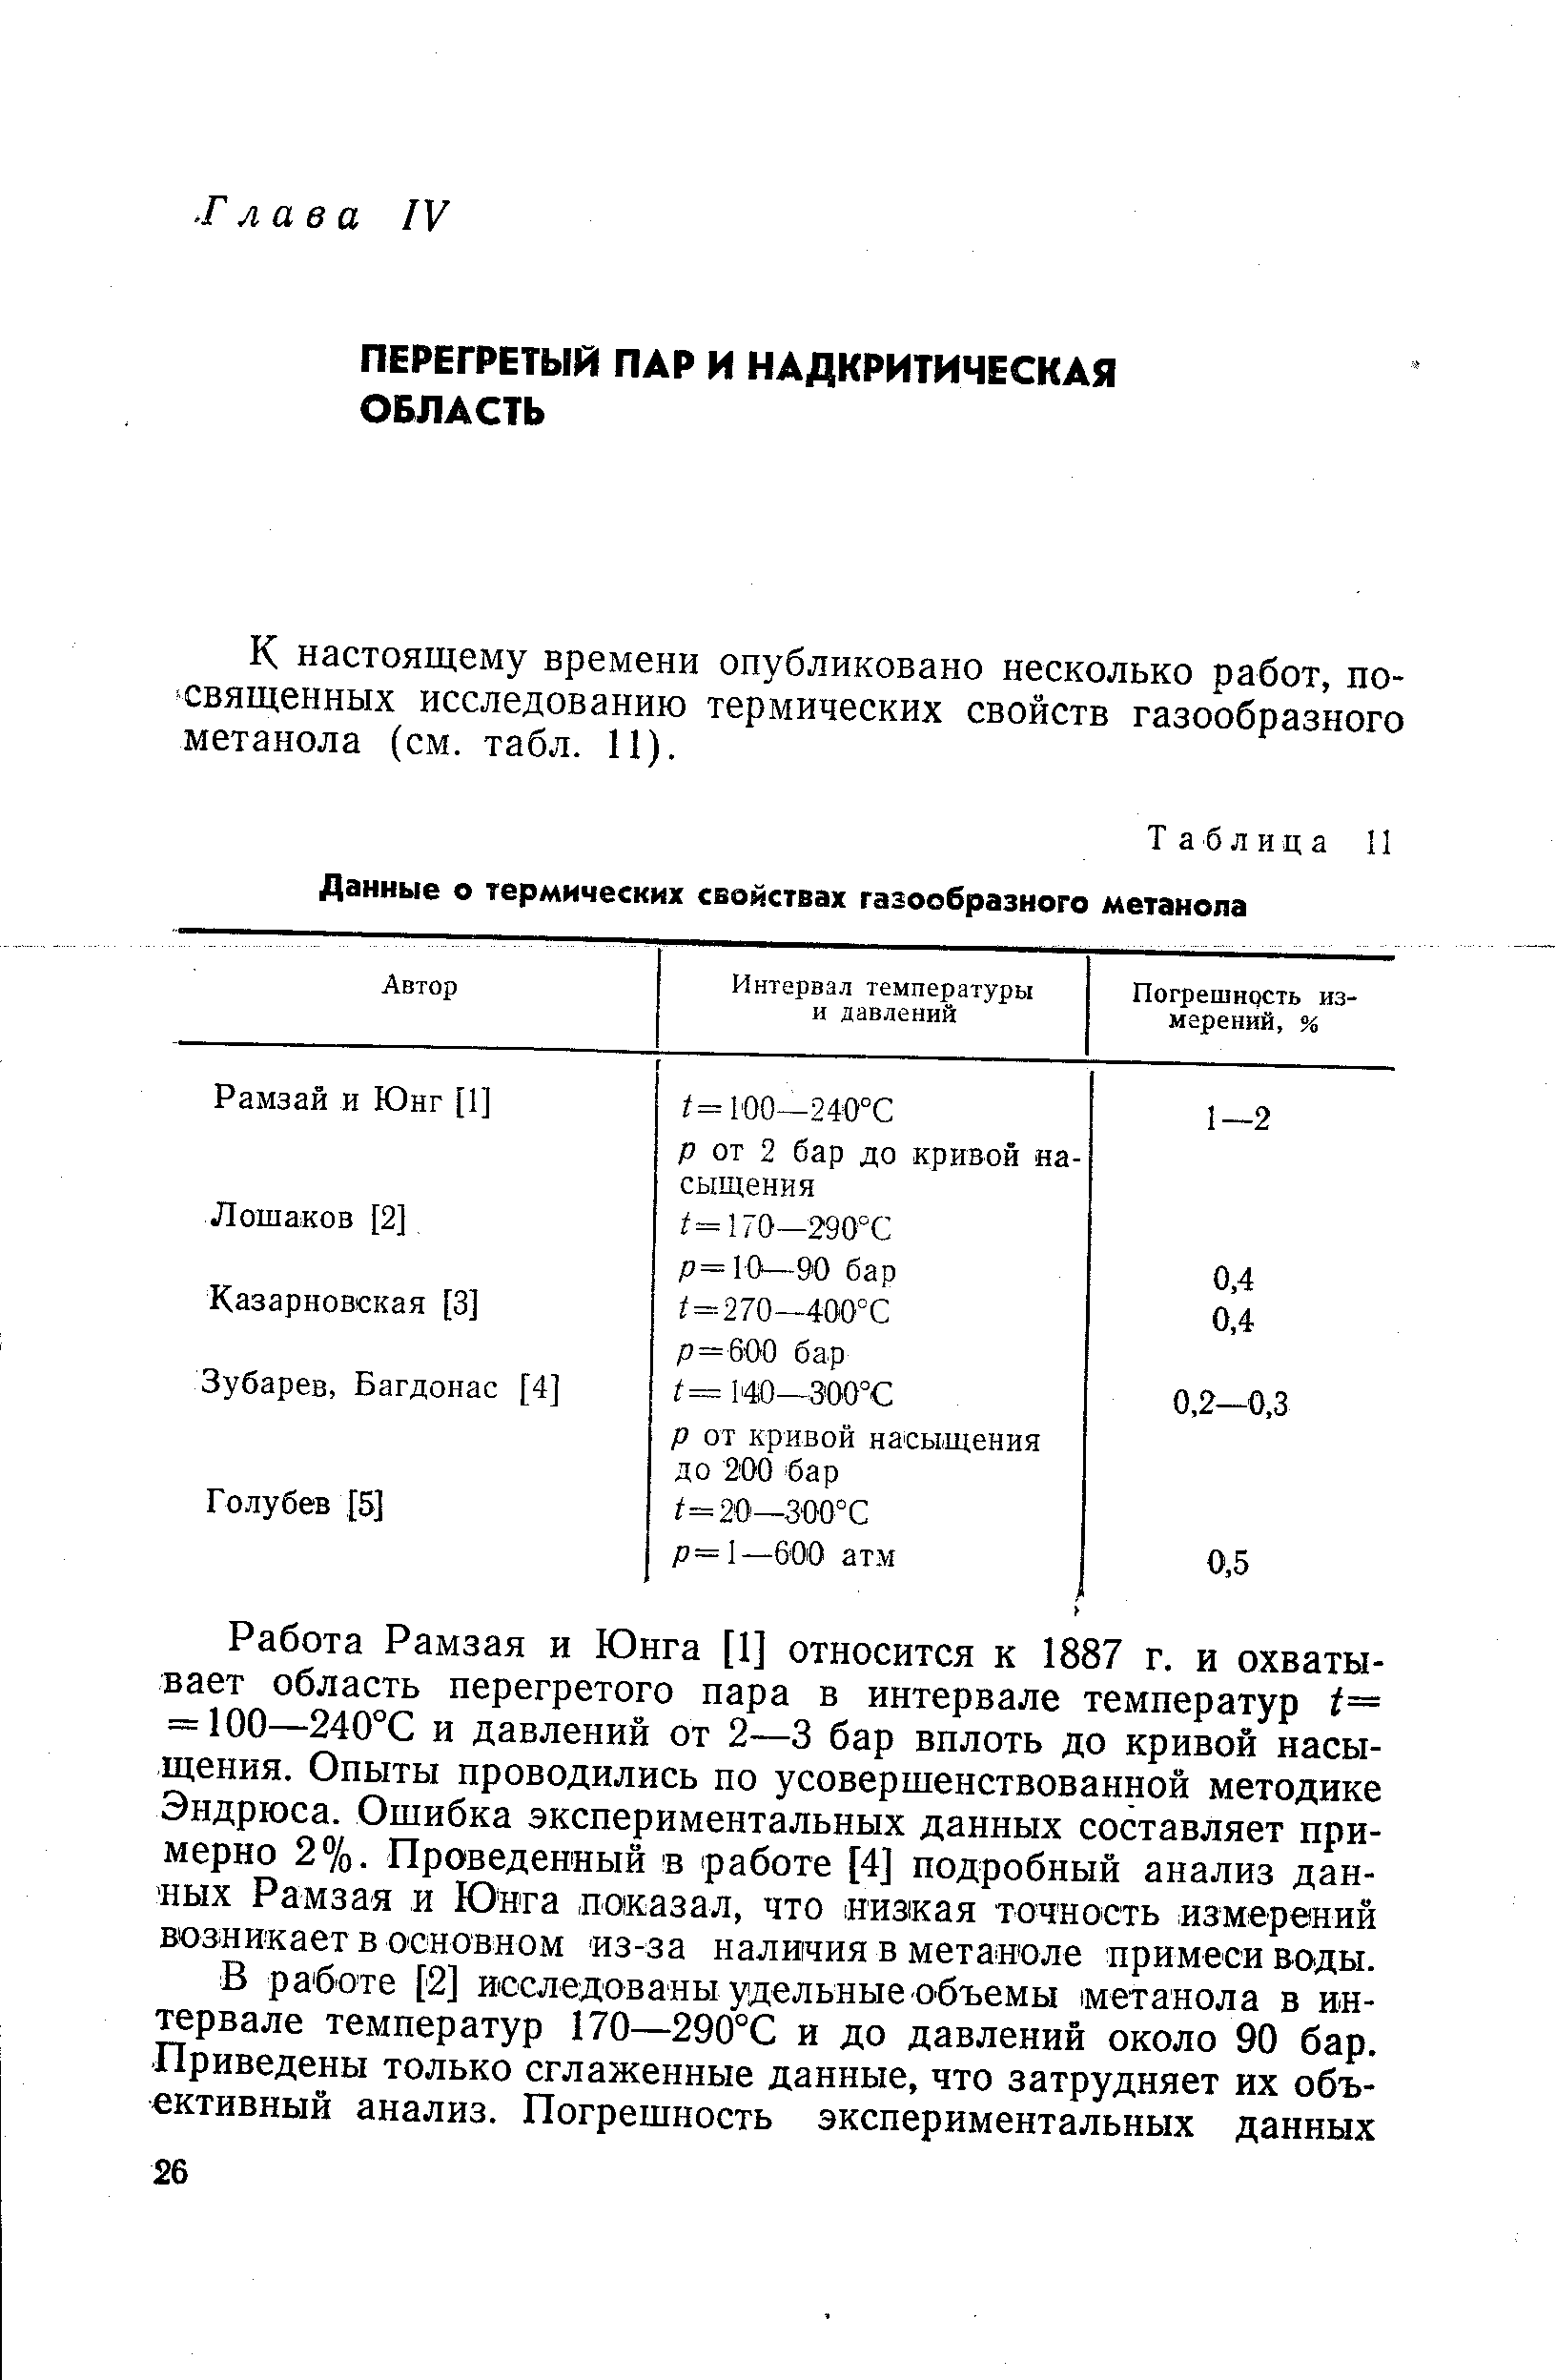 Таблица II Данные о <a href="/info/58616">термических свойствах</a> газообразного метанола
